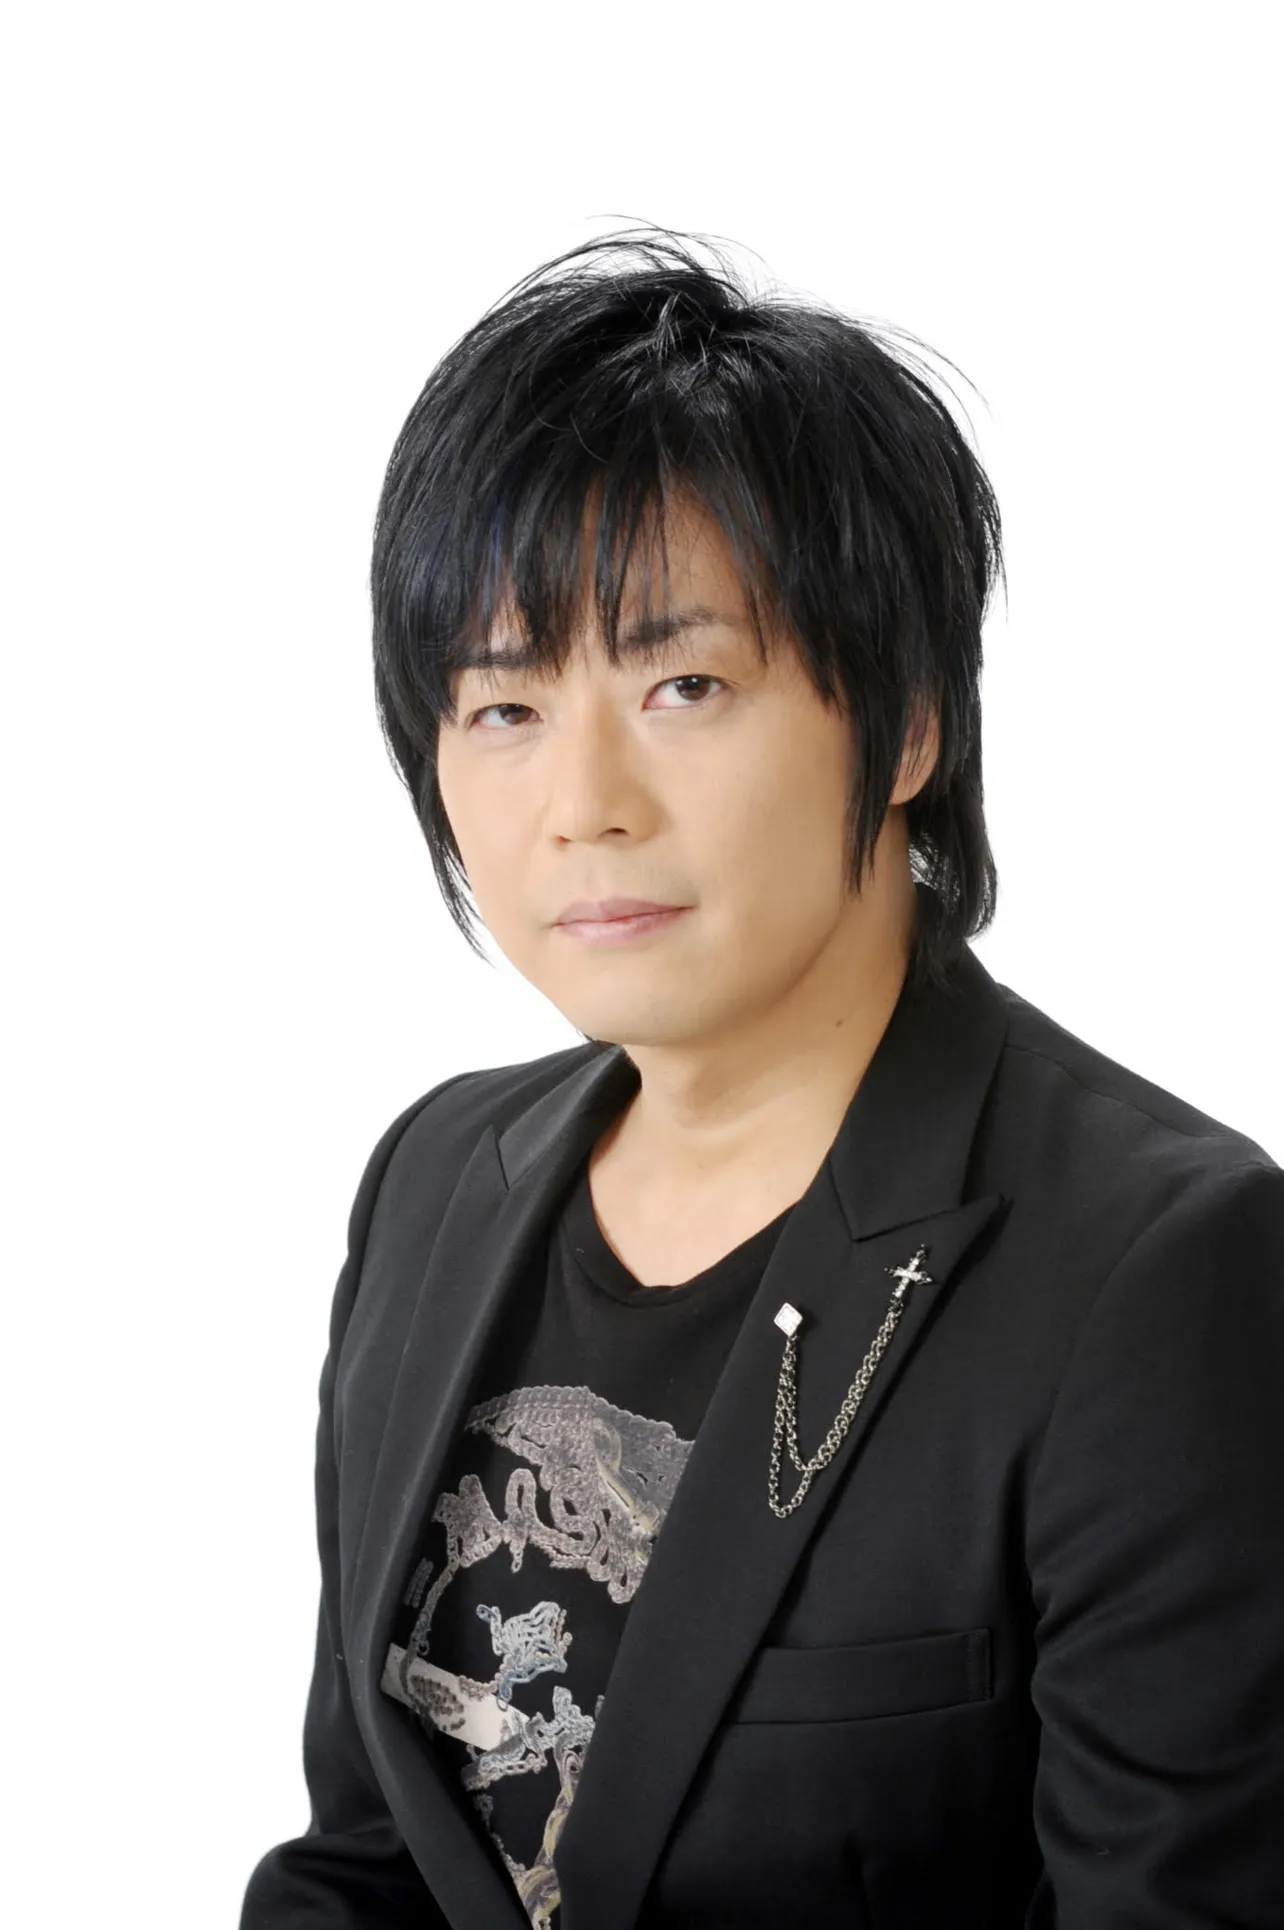 各話の登場人物を担当する京都出身の声優・遊佐浩二